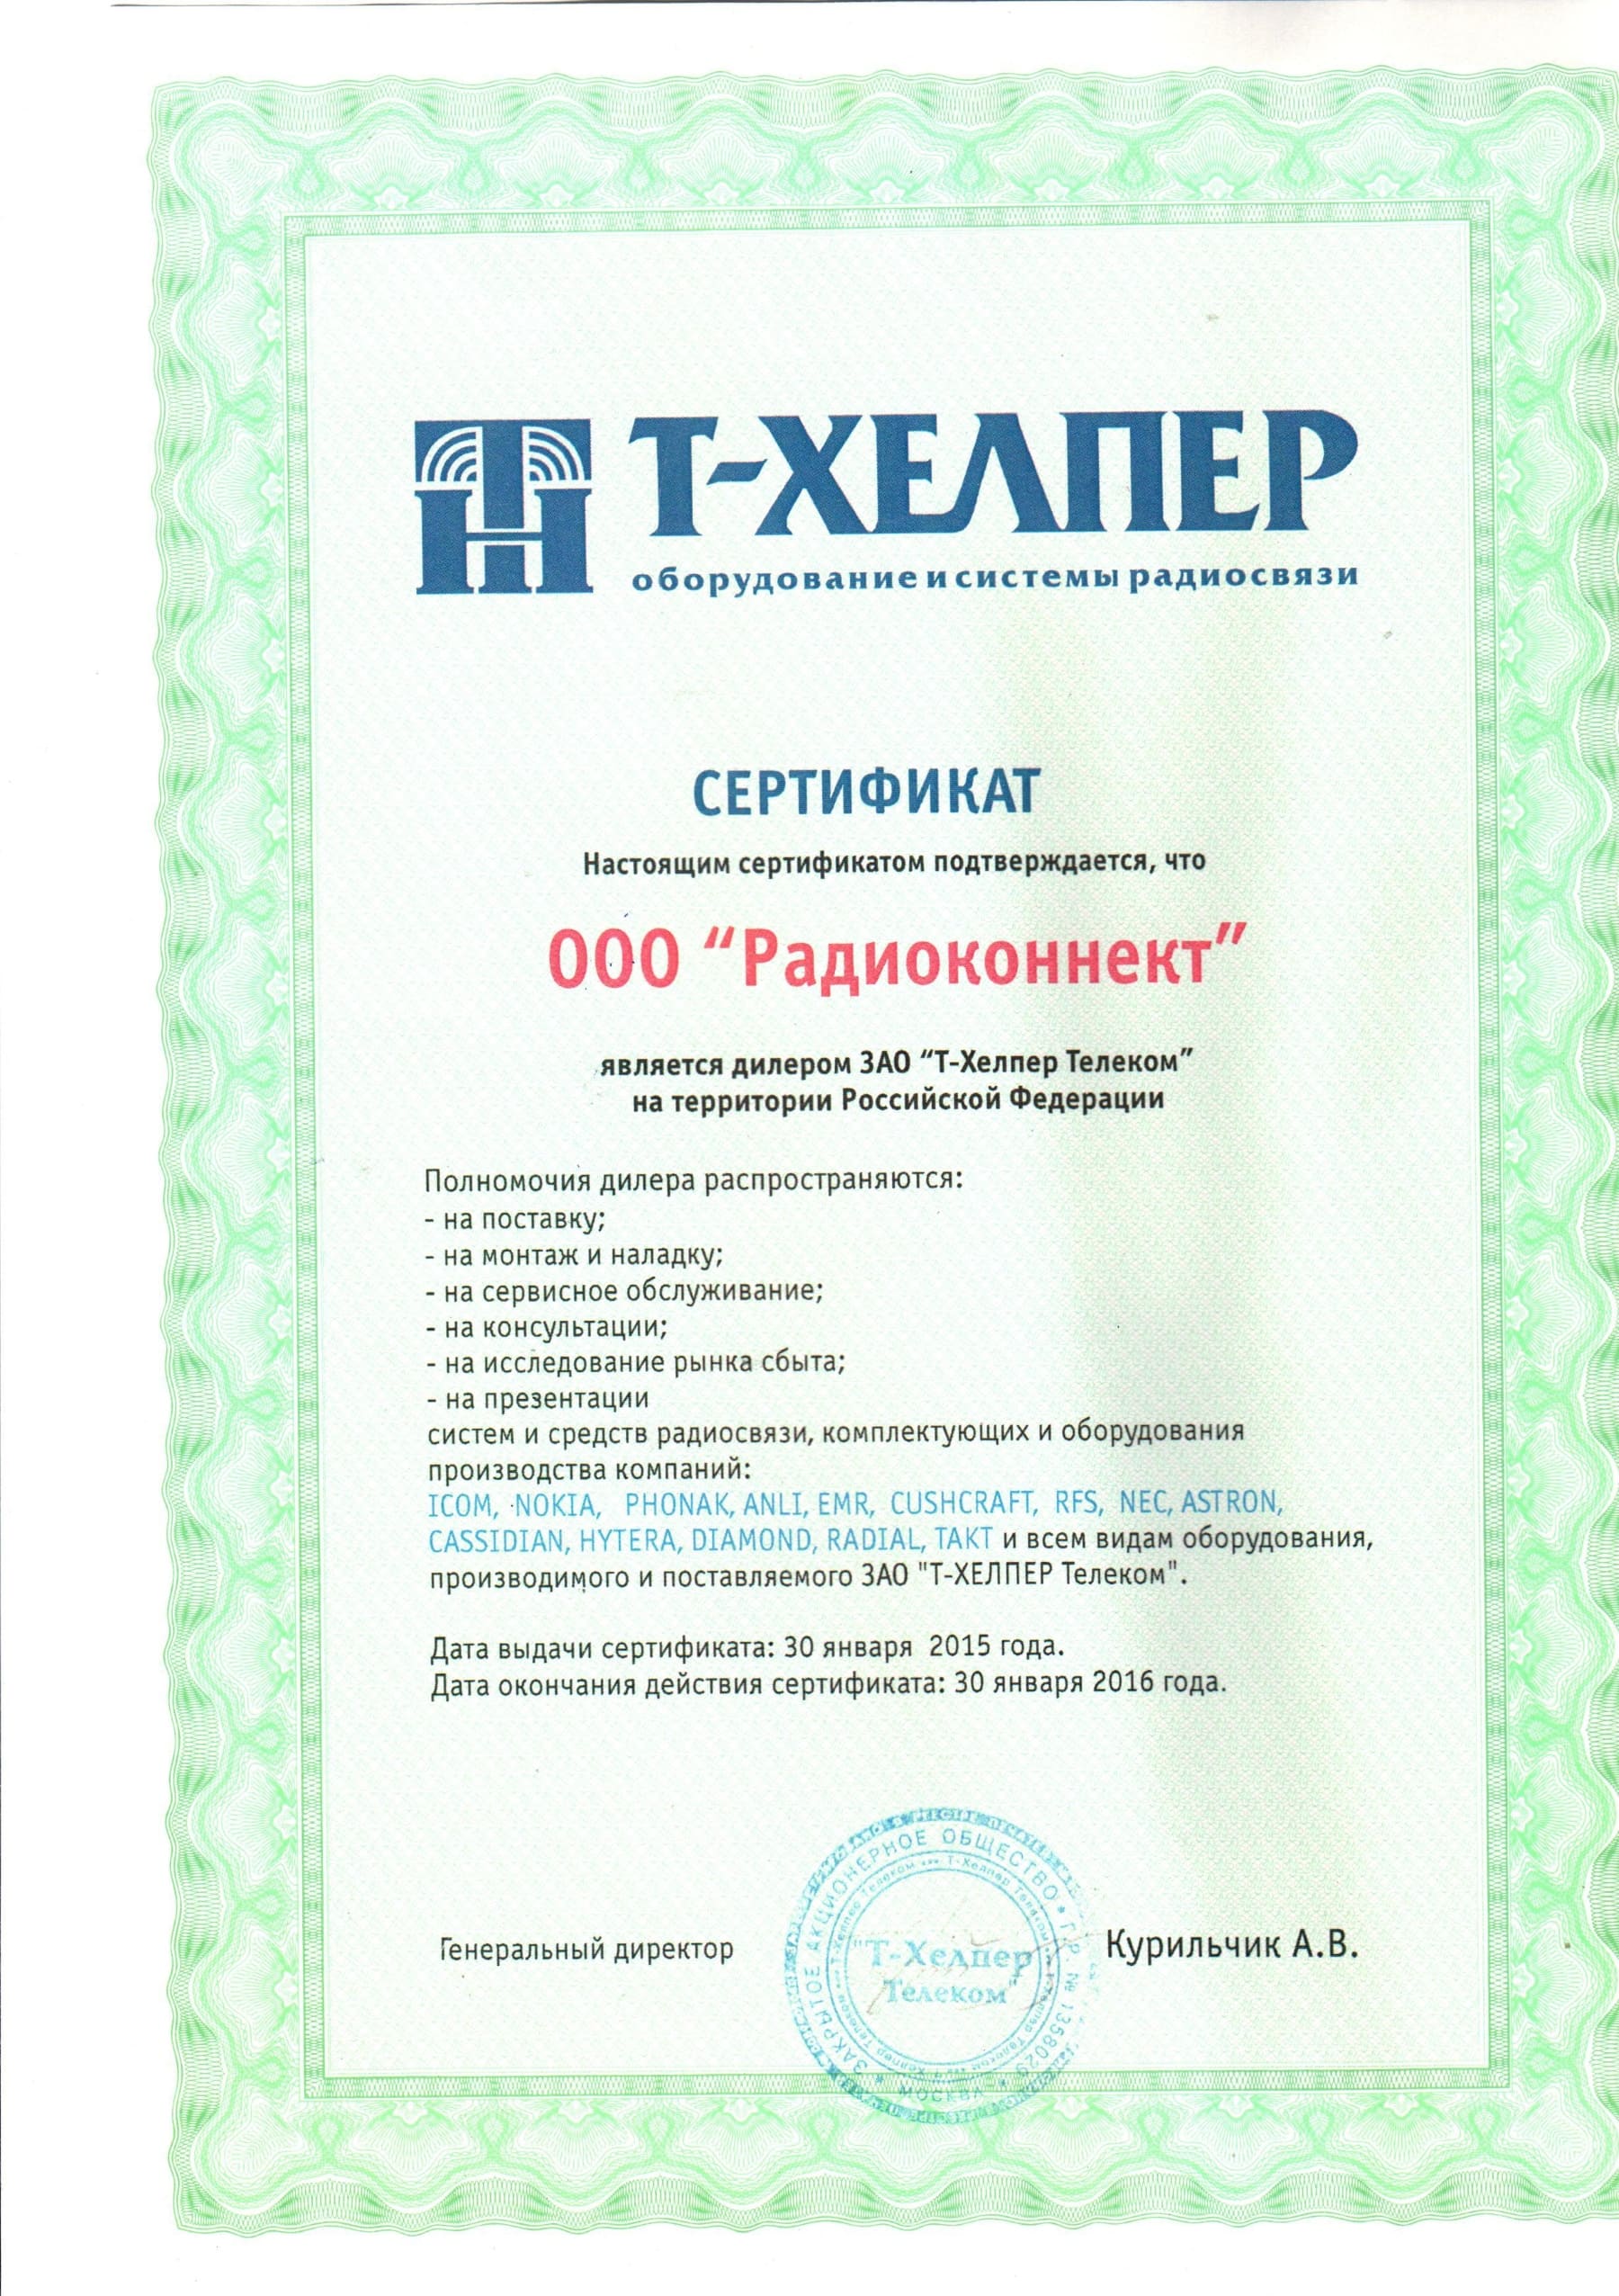 Т-Хелпер Телеком - сертификат